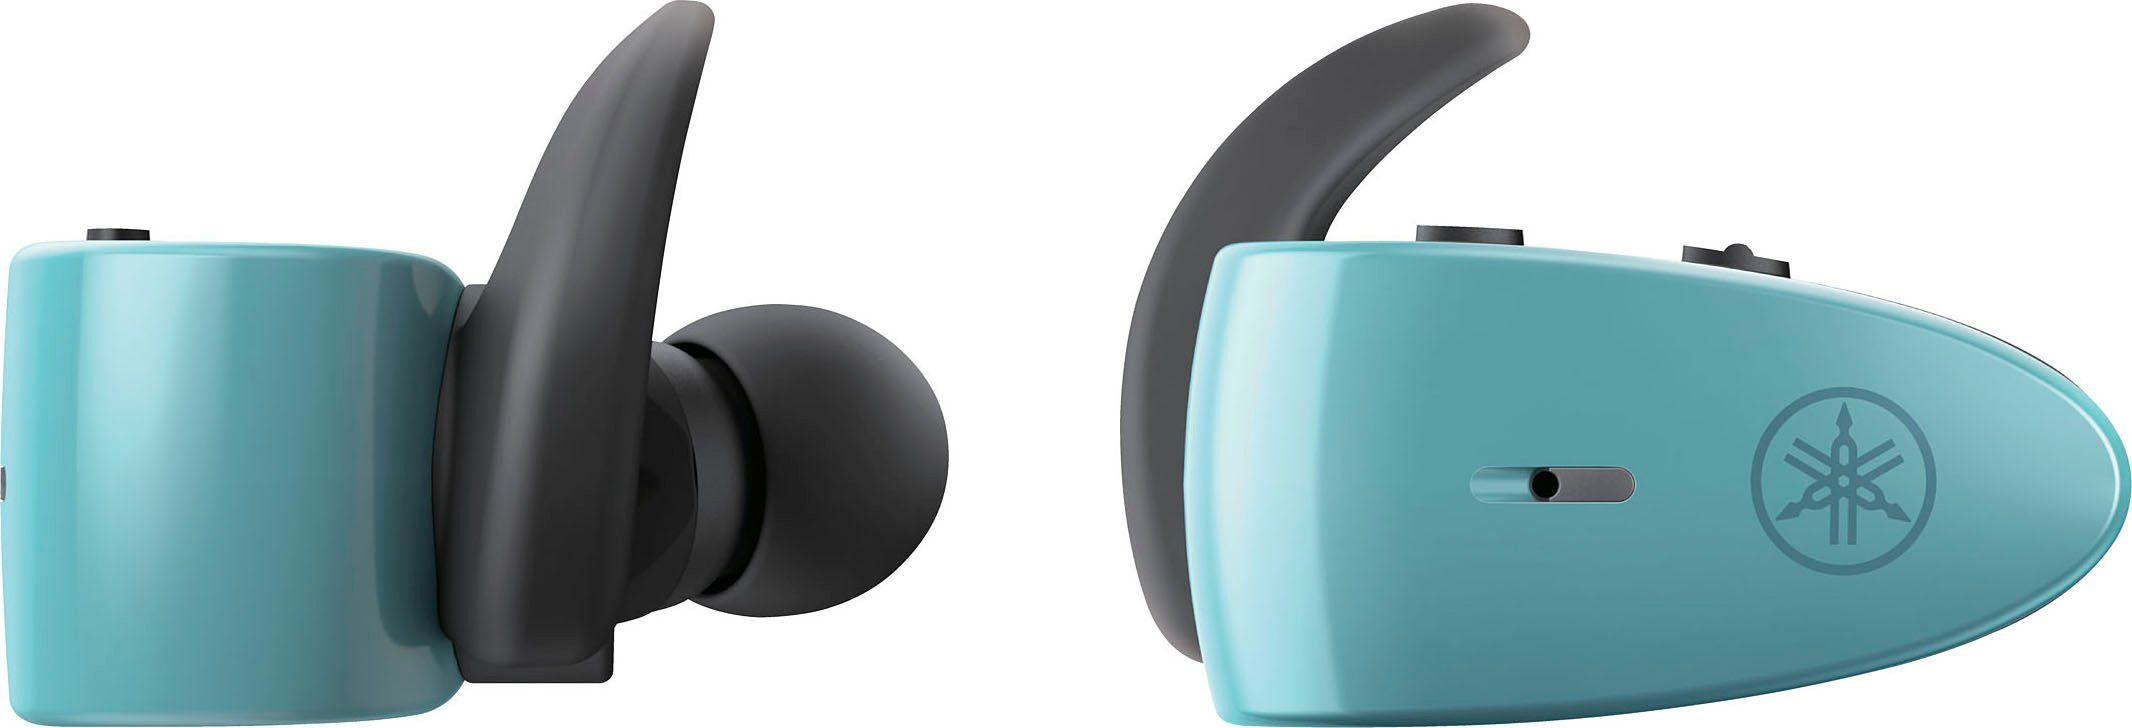 Yamaha TW-ES5A für In-Ear-Kopfhörer Musik, Steuerung Assistant, Anrufe Grün und Siri, True (Freisprechfunktion, Google Wireless, Sprachsteuerung, Bluetooth) integrierte